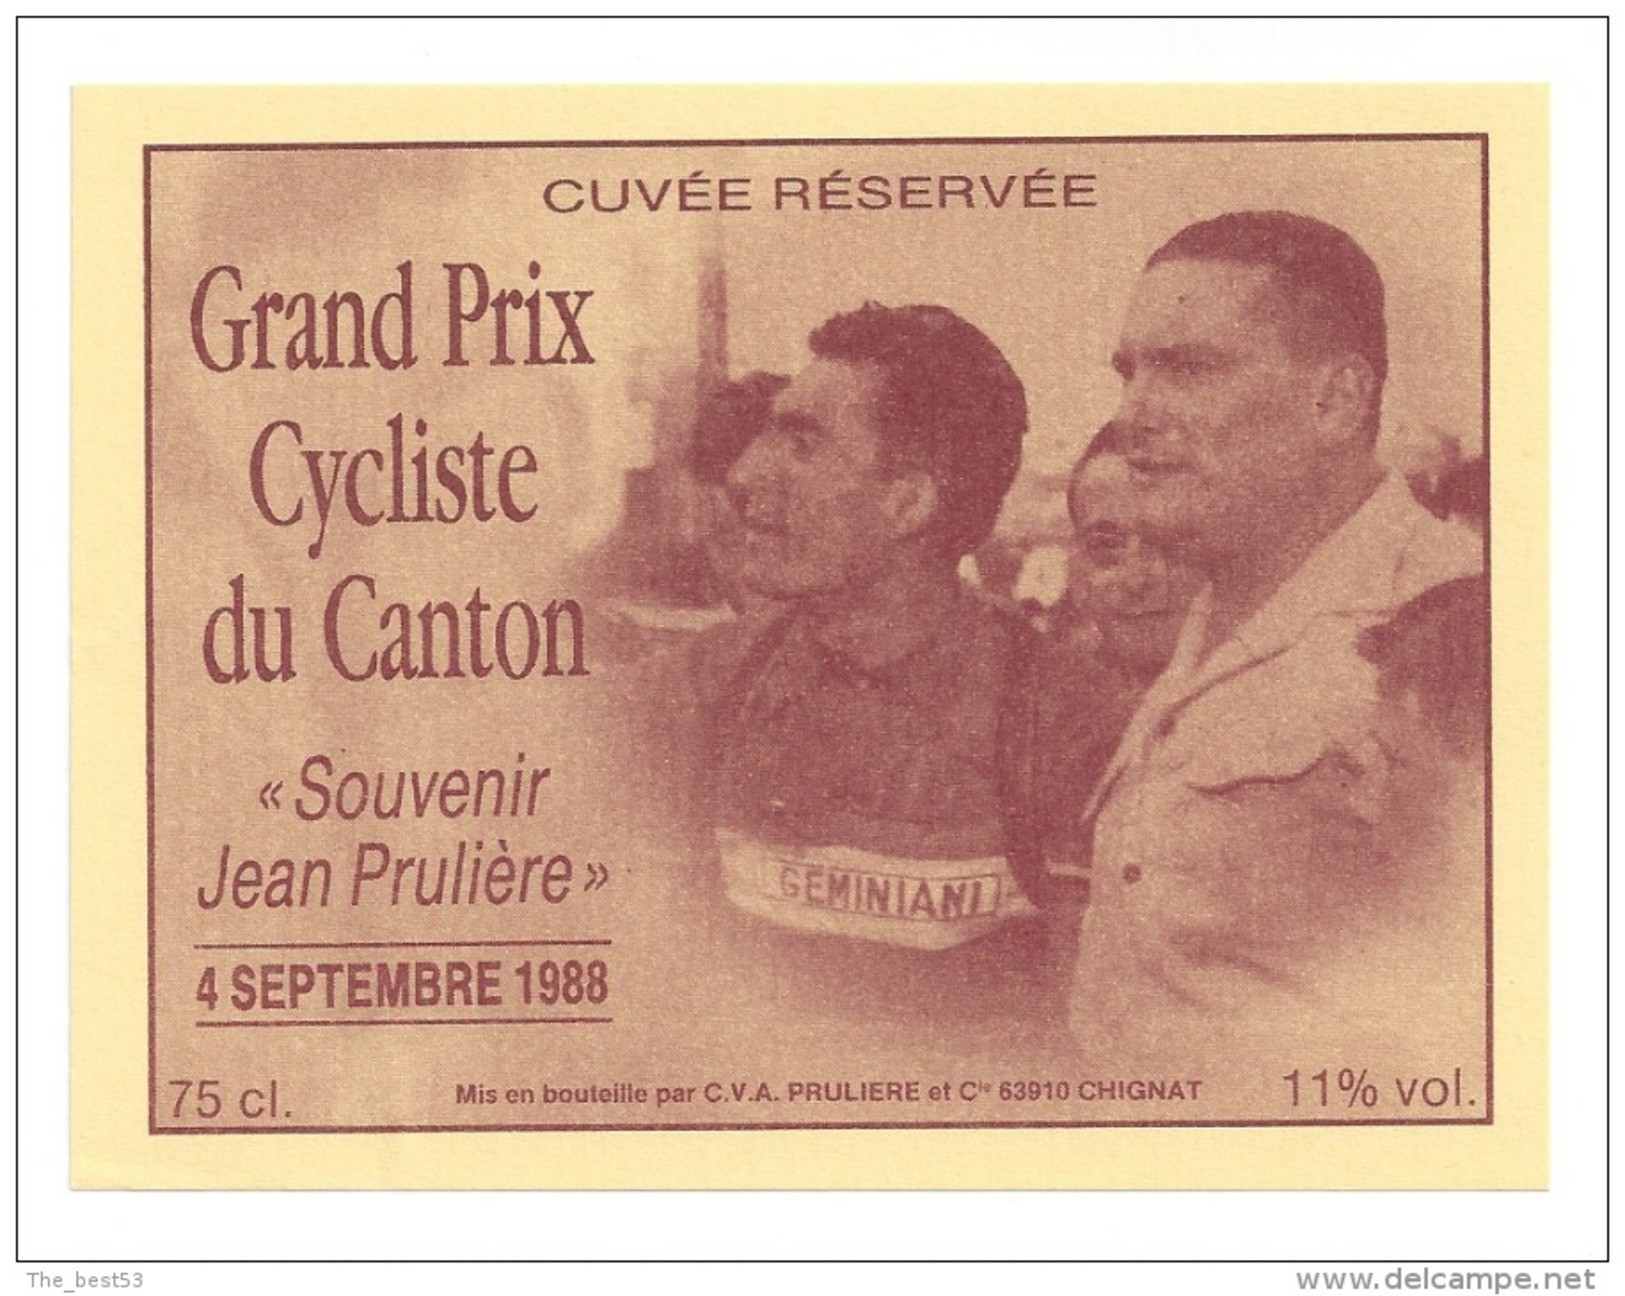 Etiquette De Vin - Cuvée Du Grand Prix Cycliste Du Canton 1988 - Souvenir Jean Prulière - CV A à Chignat (63) - Cyclisme - Cyclisme